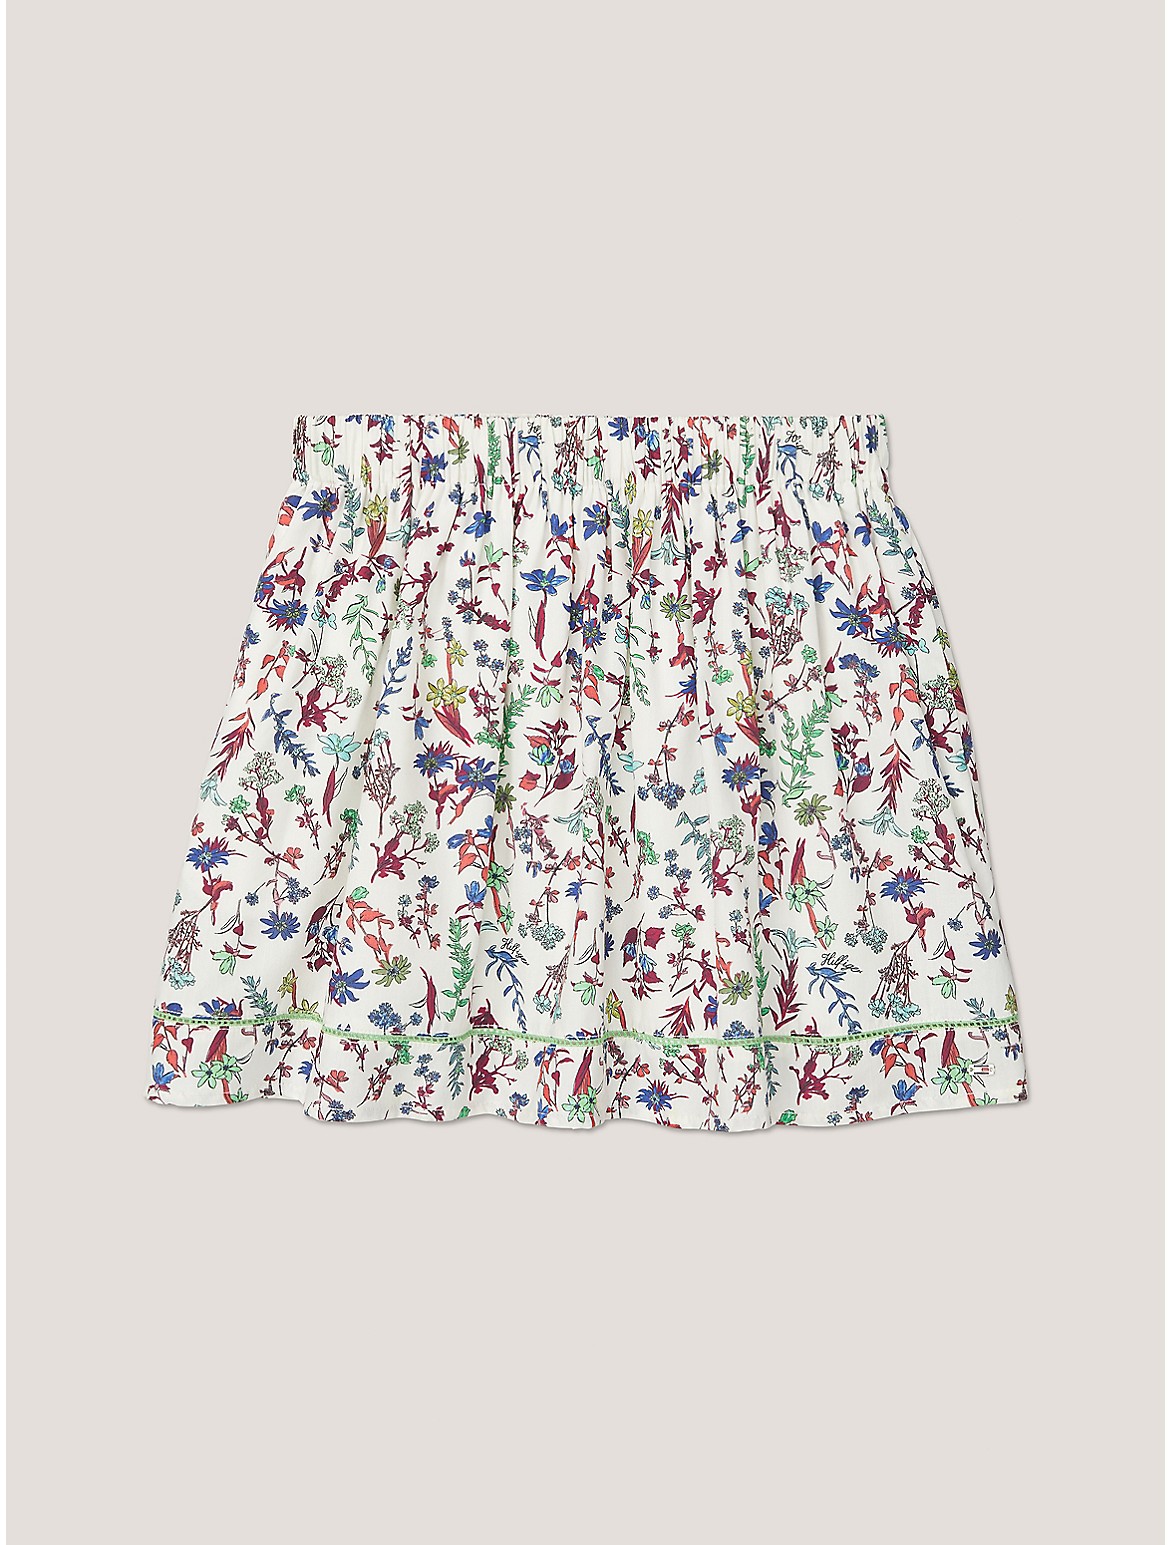 Tommy Hilfiger Girls' Kids' Floral Print Skirt